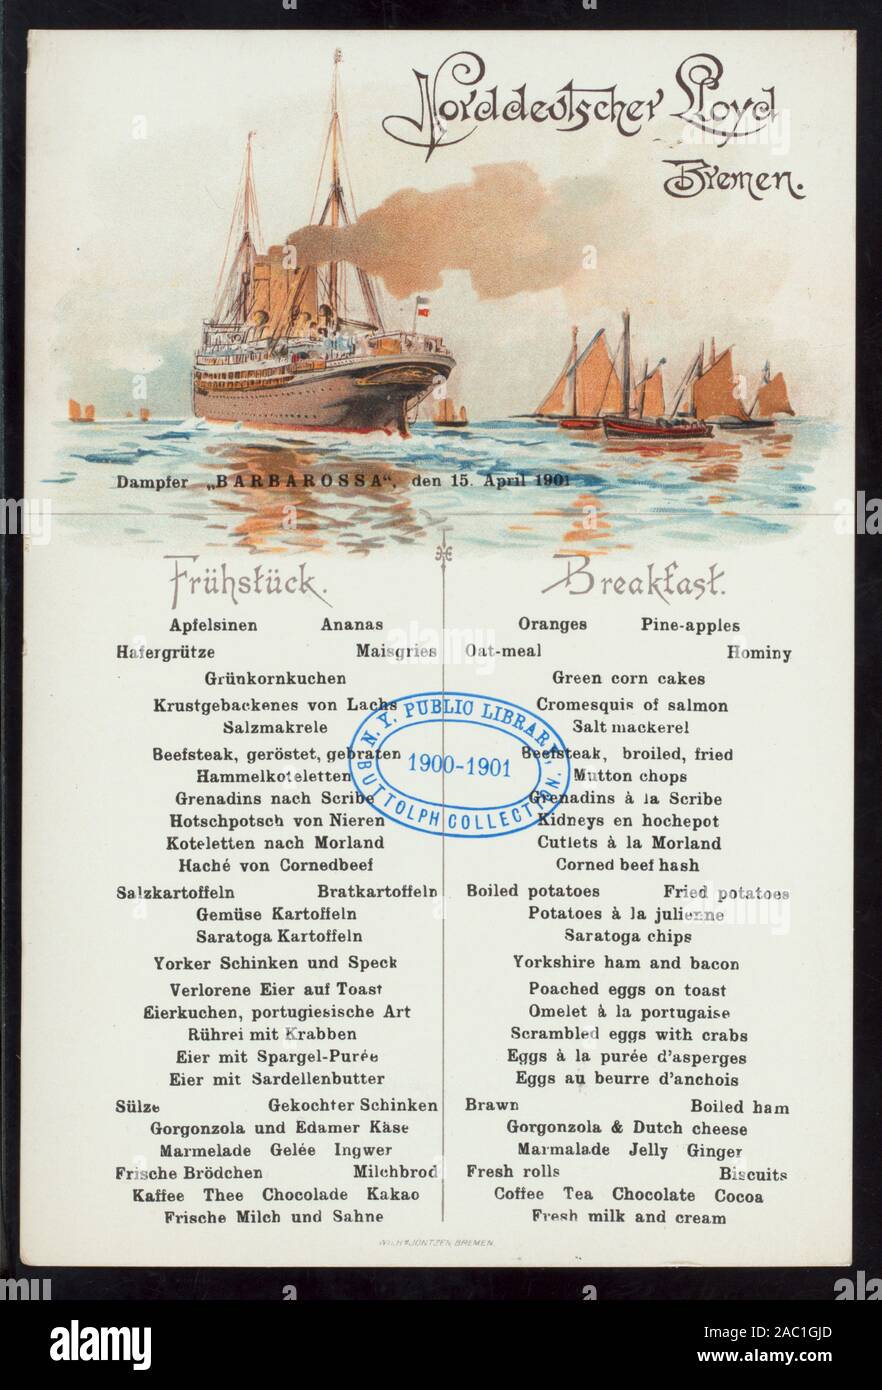 FRUHSTUCK (detenute da) NORDDEUTSCHER LLOYD DI BREMA (a) DAMPFER BARBAROSSA (SS;) Citazione/Riferimento: 1901-0927 tedesco e inglese; illustrazione del piroscafo & barche a vela in mare; FRUHSTUCK [detenute da] NORDDEUTSCHER LLOYD BREMEN [at] DAMPFER BARBAROSSA (SS;) Foto Stock